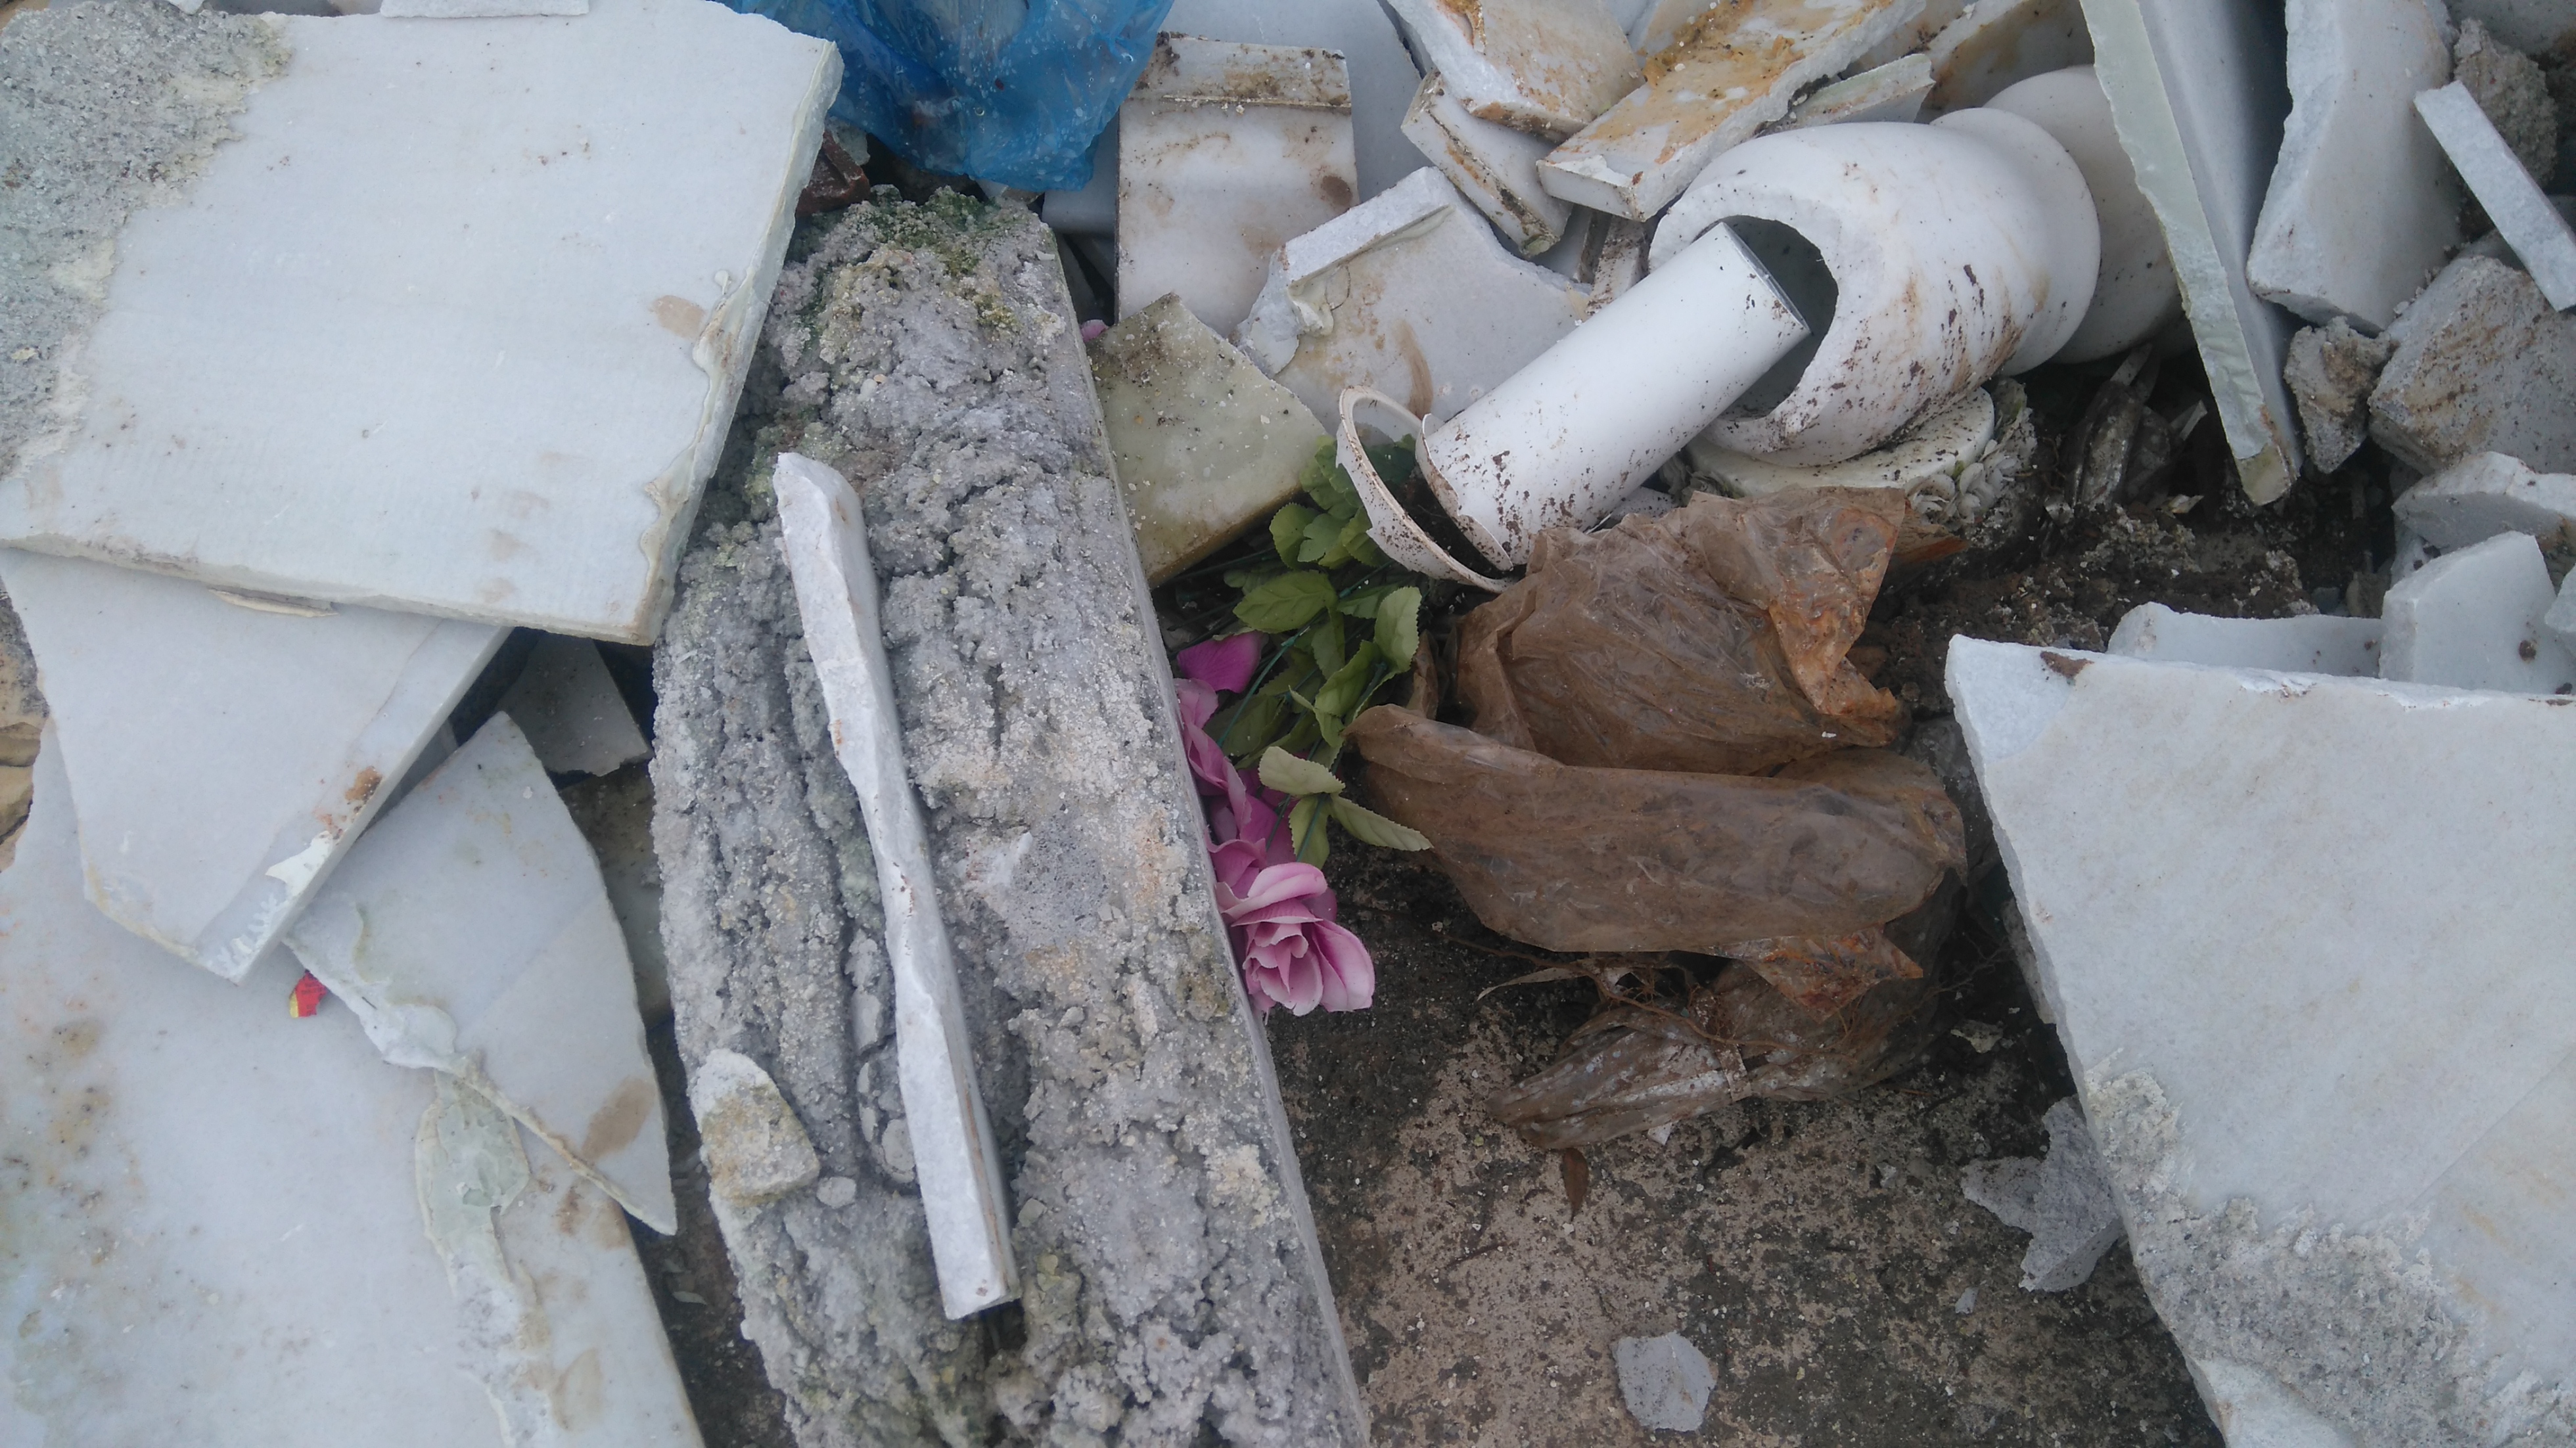 Μάρμαρα χώματα και τσίγκοι από τάφους   πεταμένα για μία εβδομάδα έξω από το Νεκροταφείο των Ψαχνών DSC 1218